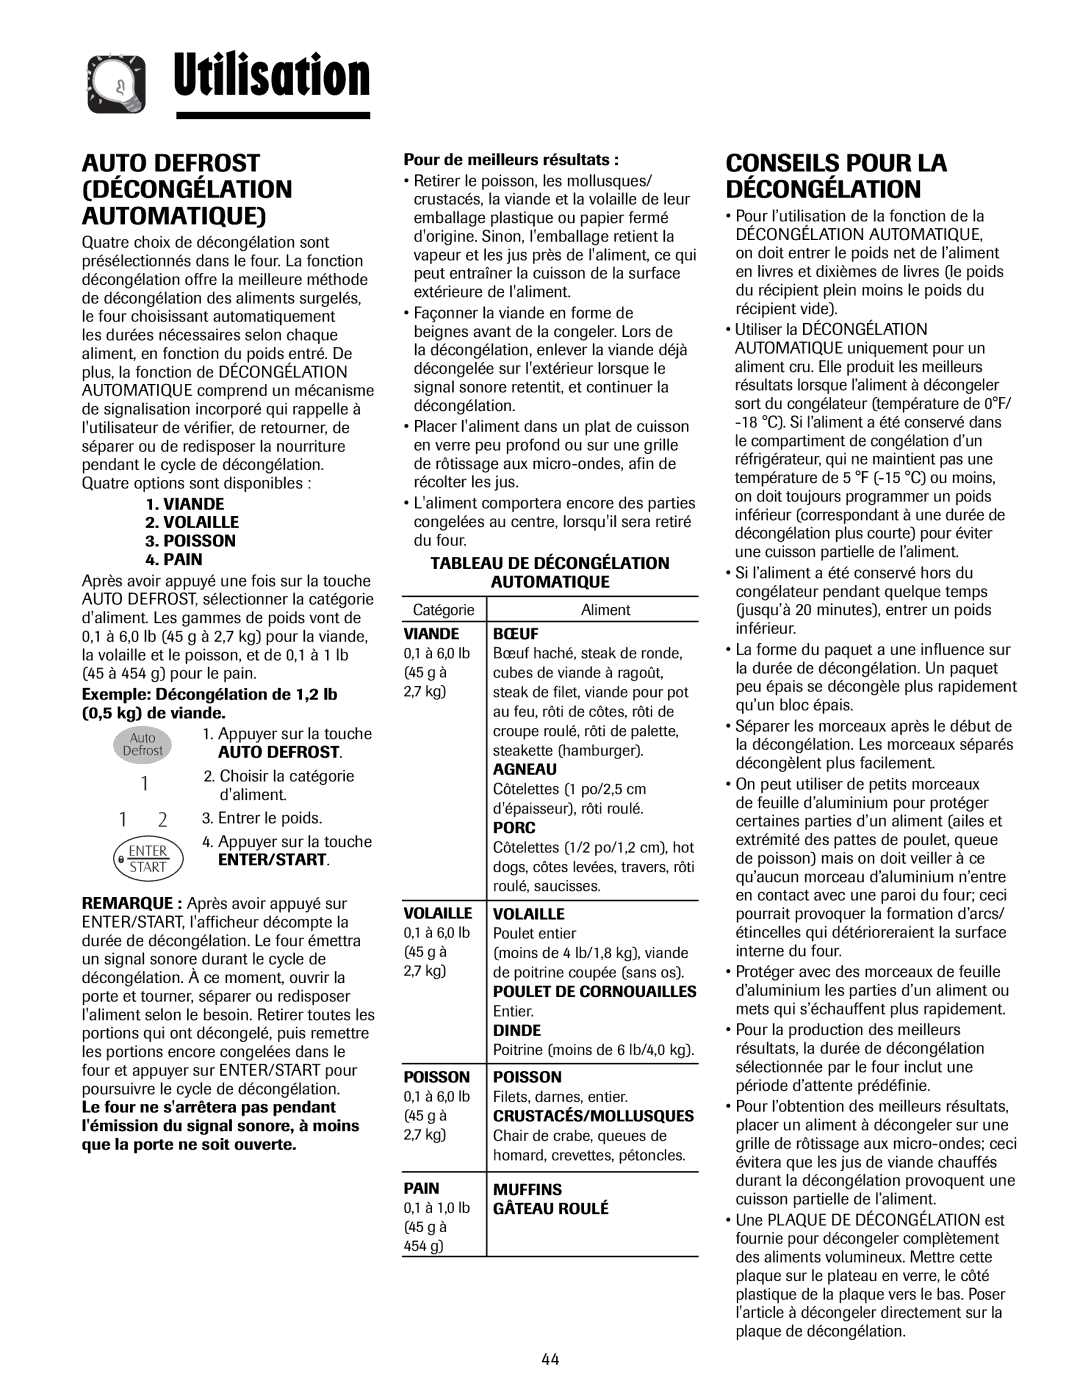 Maytag MMV5207AA Auto Defrost Décongélation Automatique, Conseils Pour LA Décongélation, Viande Volaille Poisson Pain 